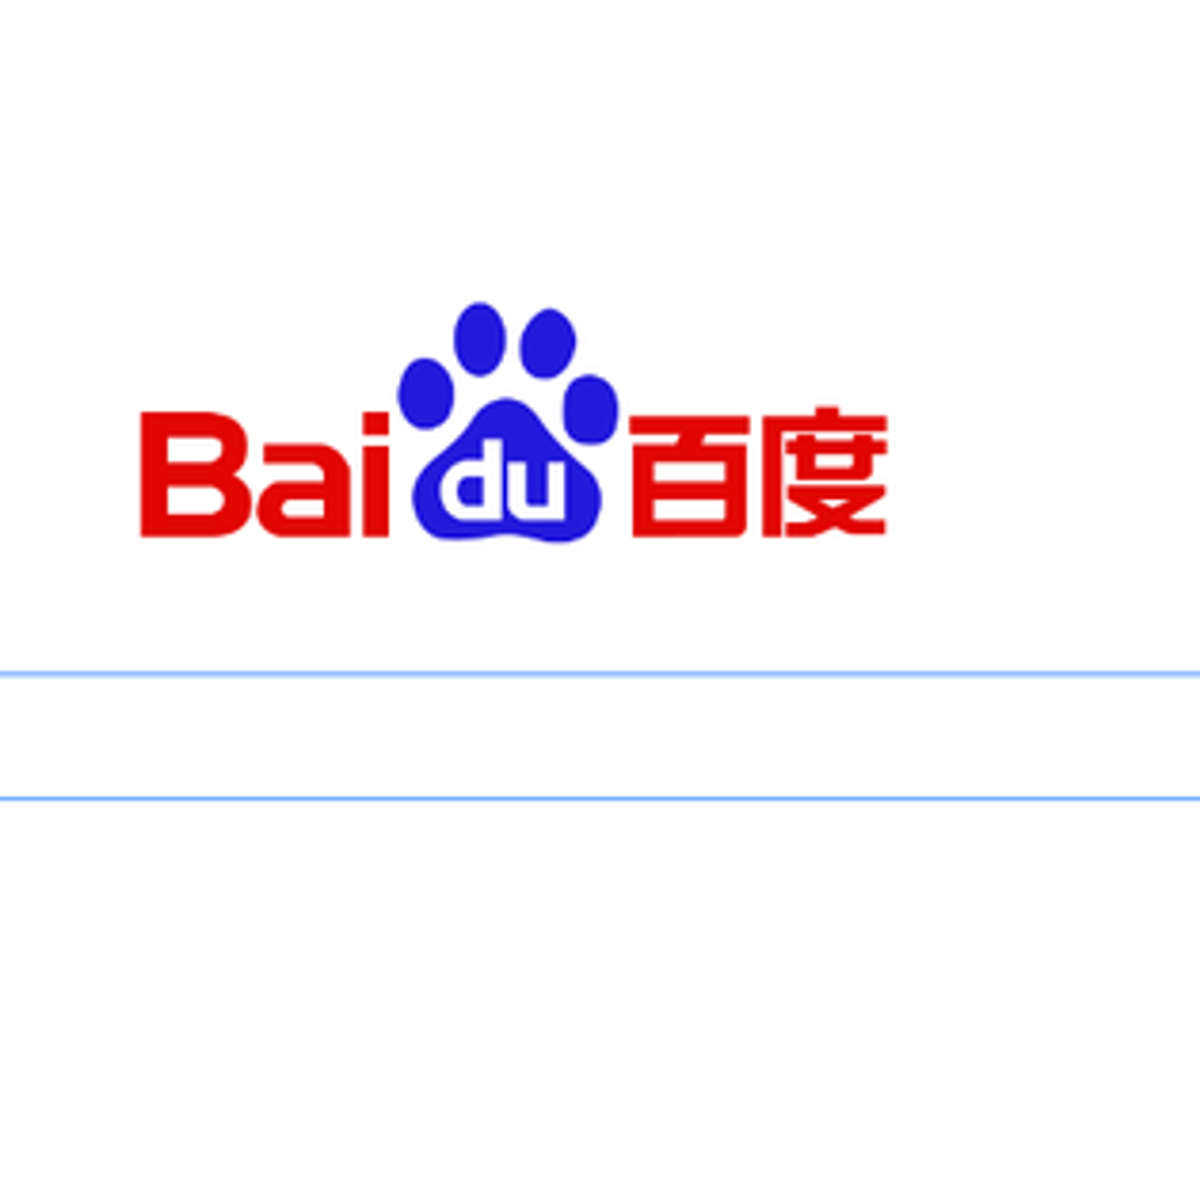 Baidu поисковая